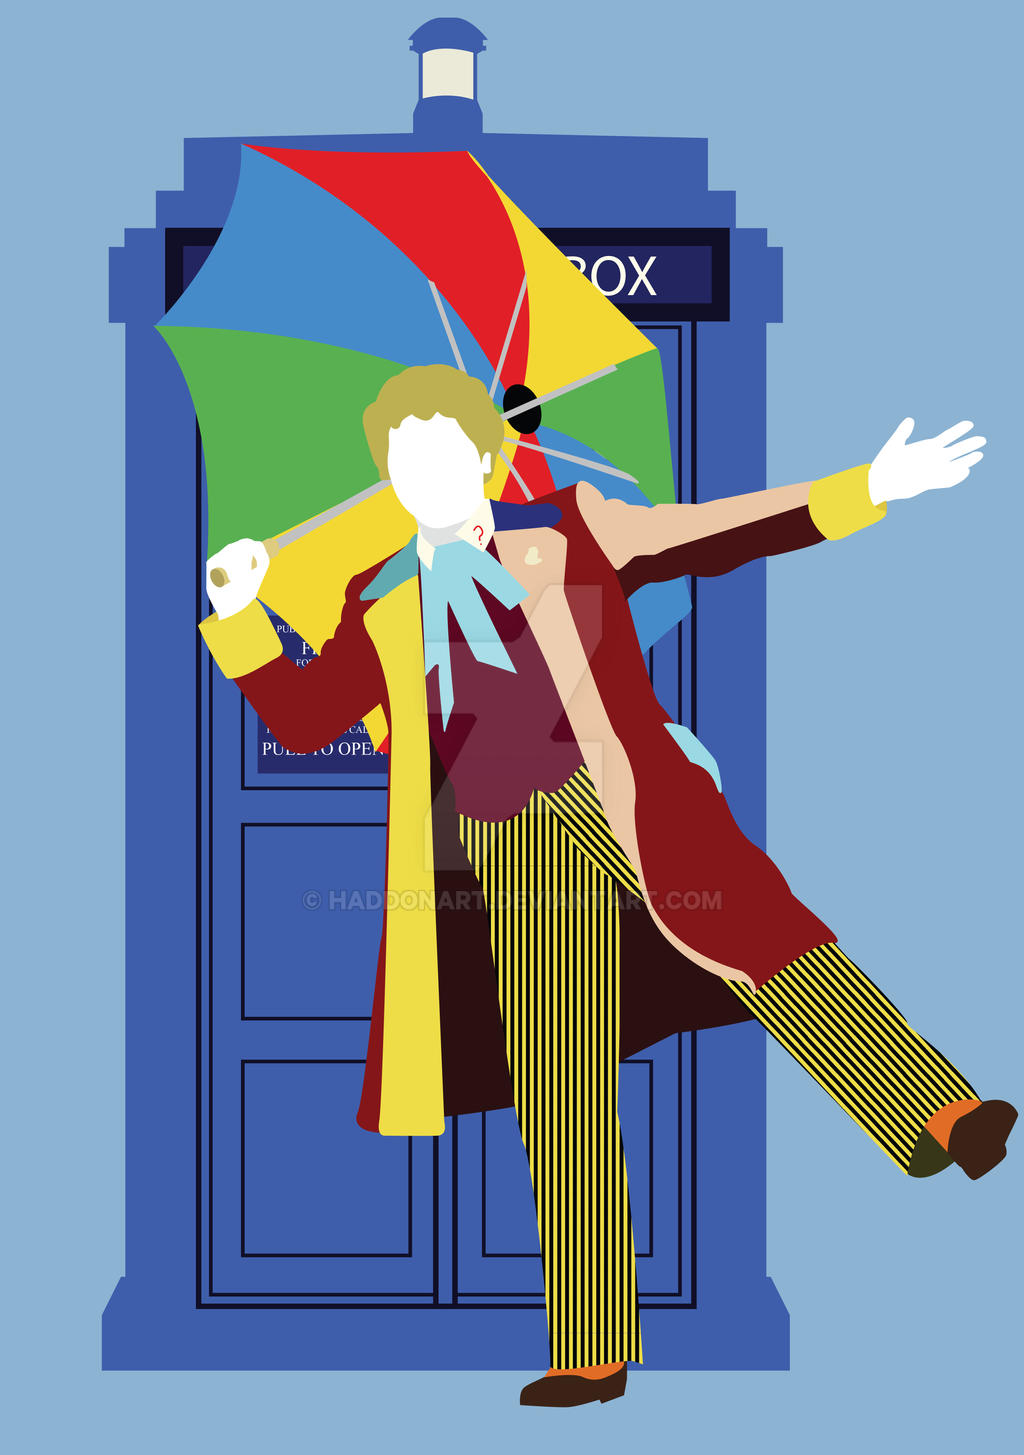 Six and the TARDIS